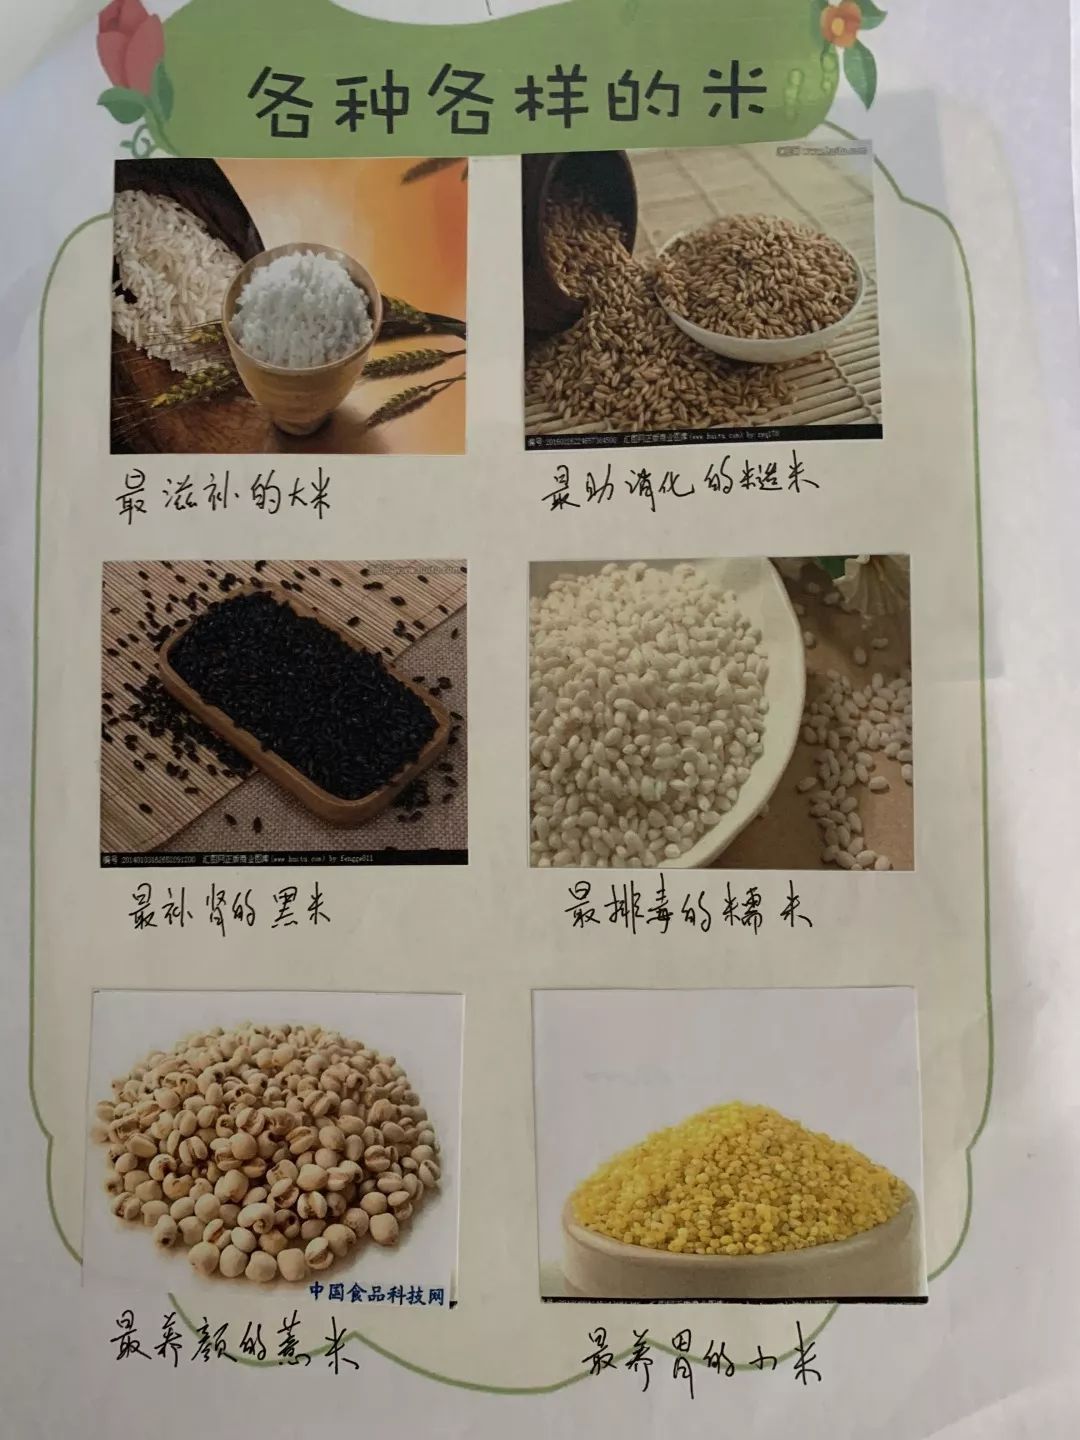 米的分类和图片和名称图片